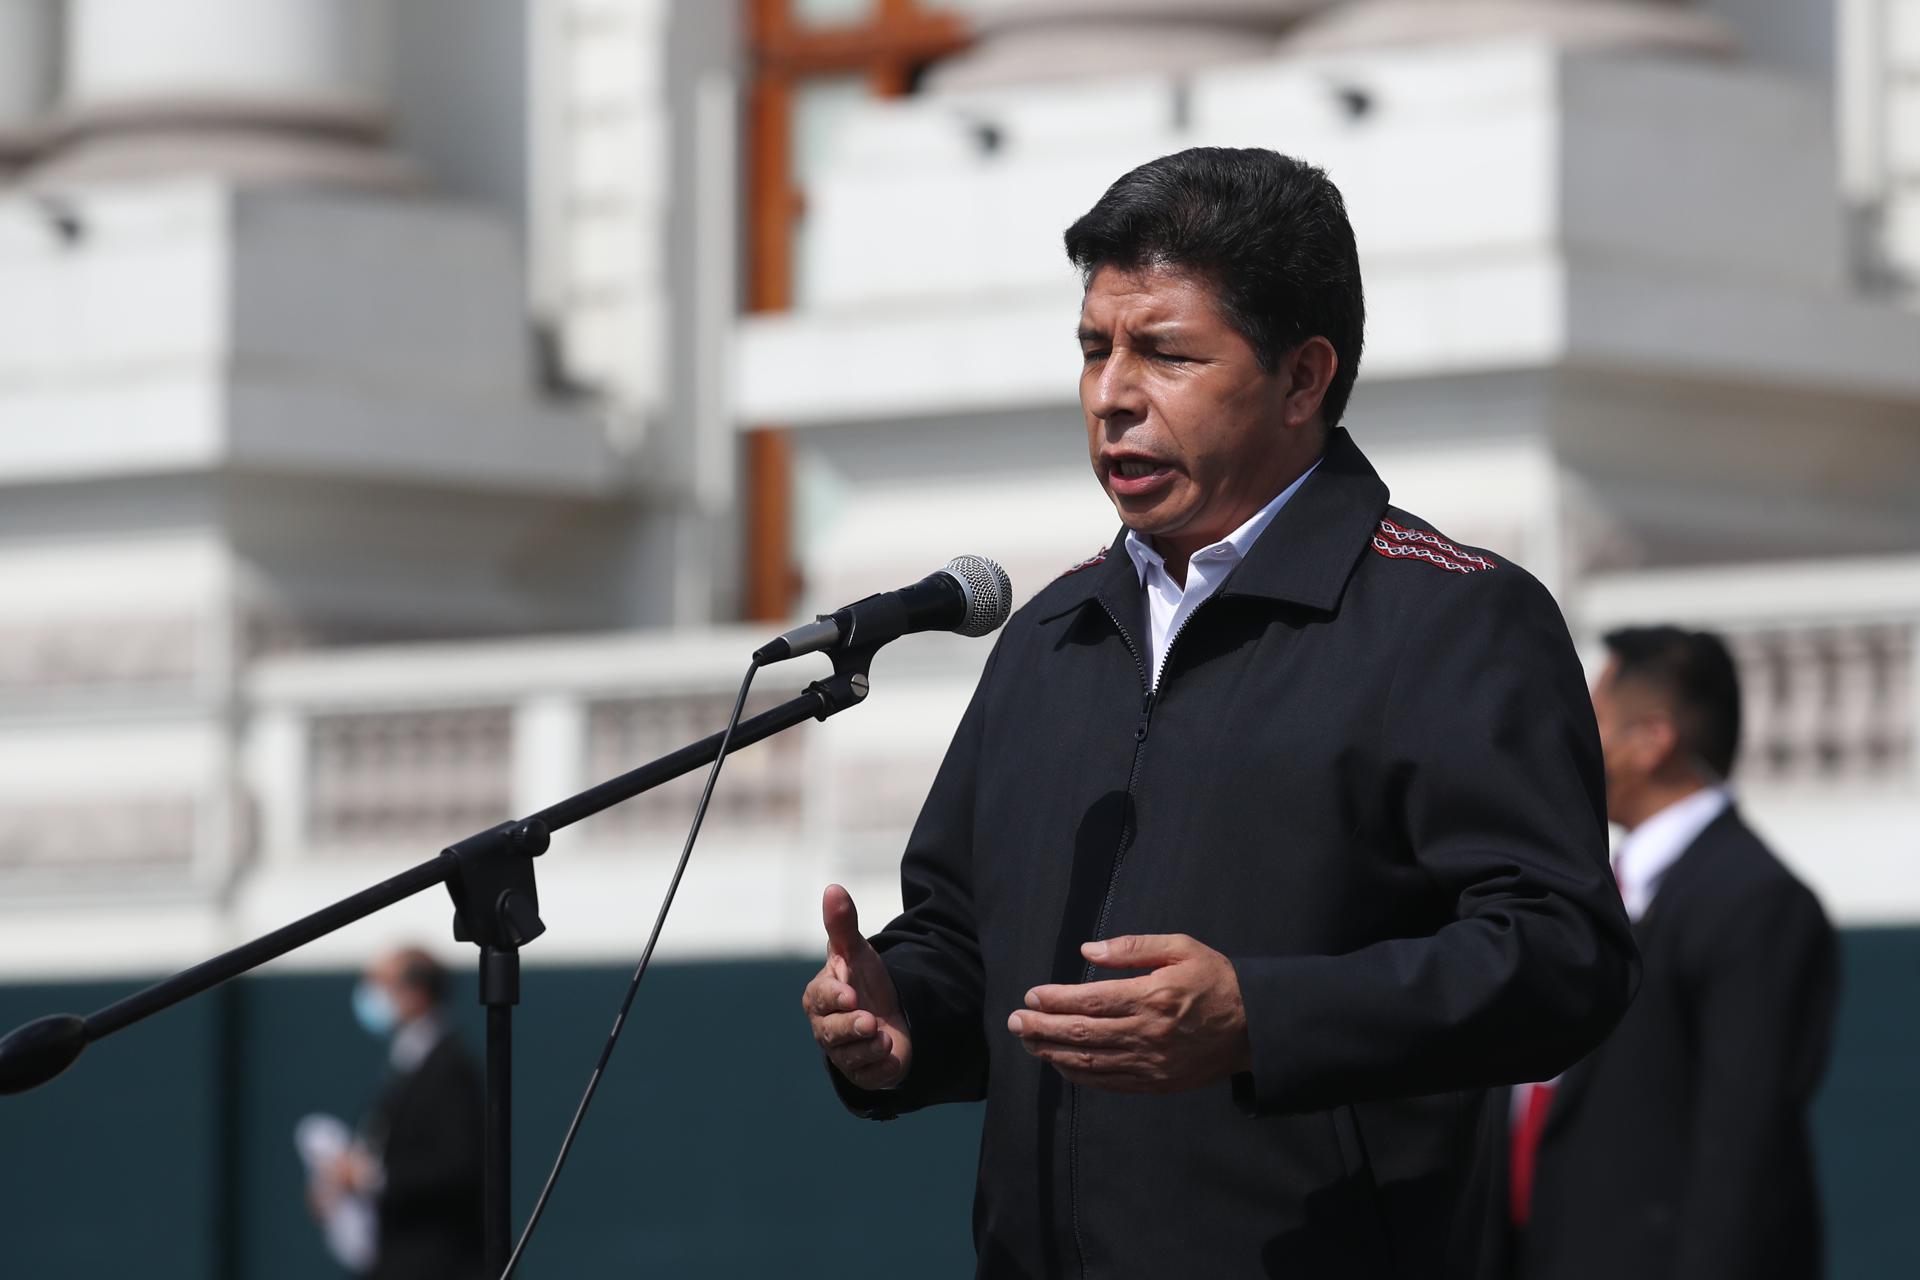 El presidente de Perú dictó la disolución del Congreso e instauró un Gobierno de emergencia